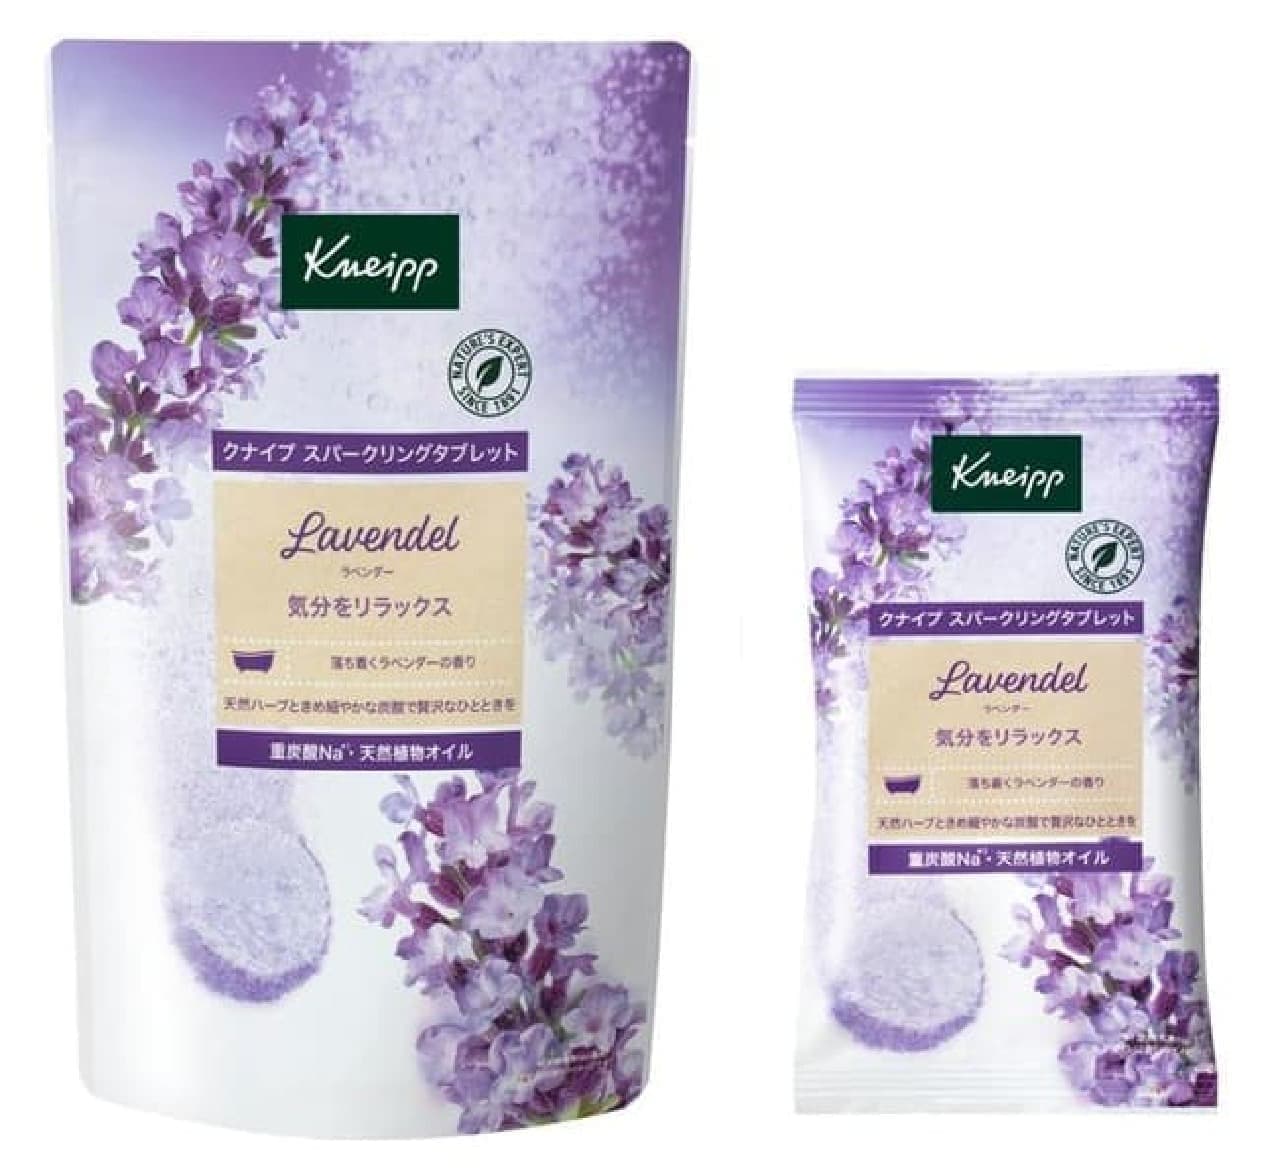 Kneipp Sparkling Tablet Lavender scent